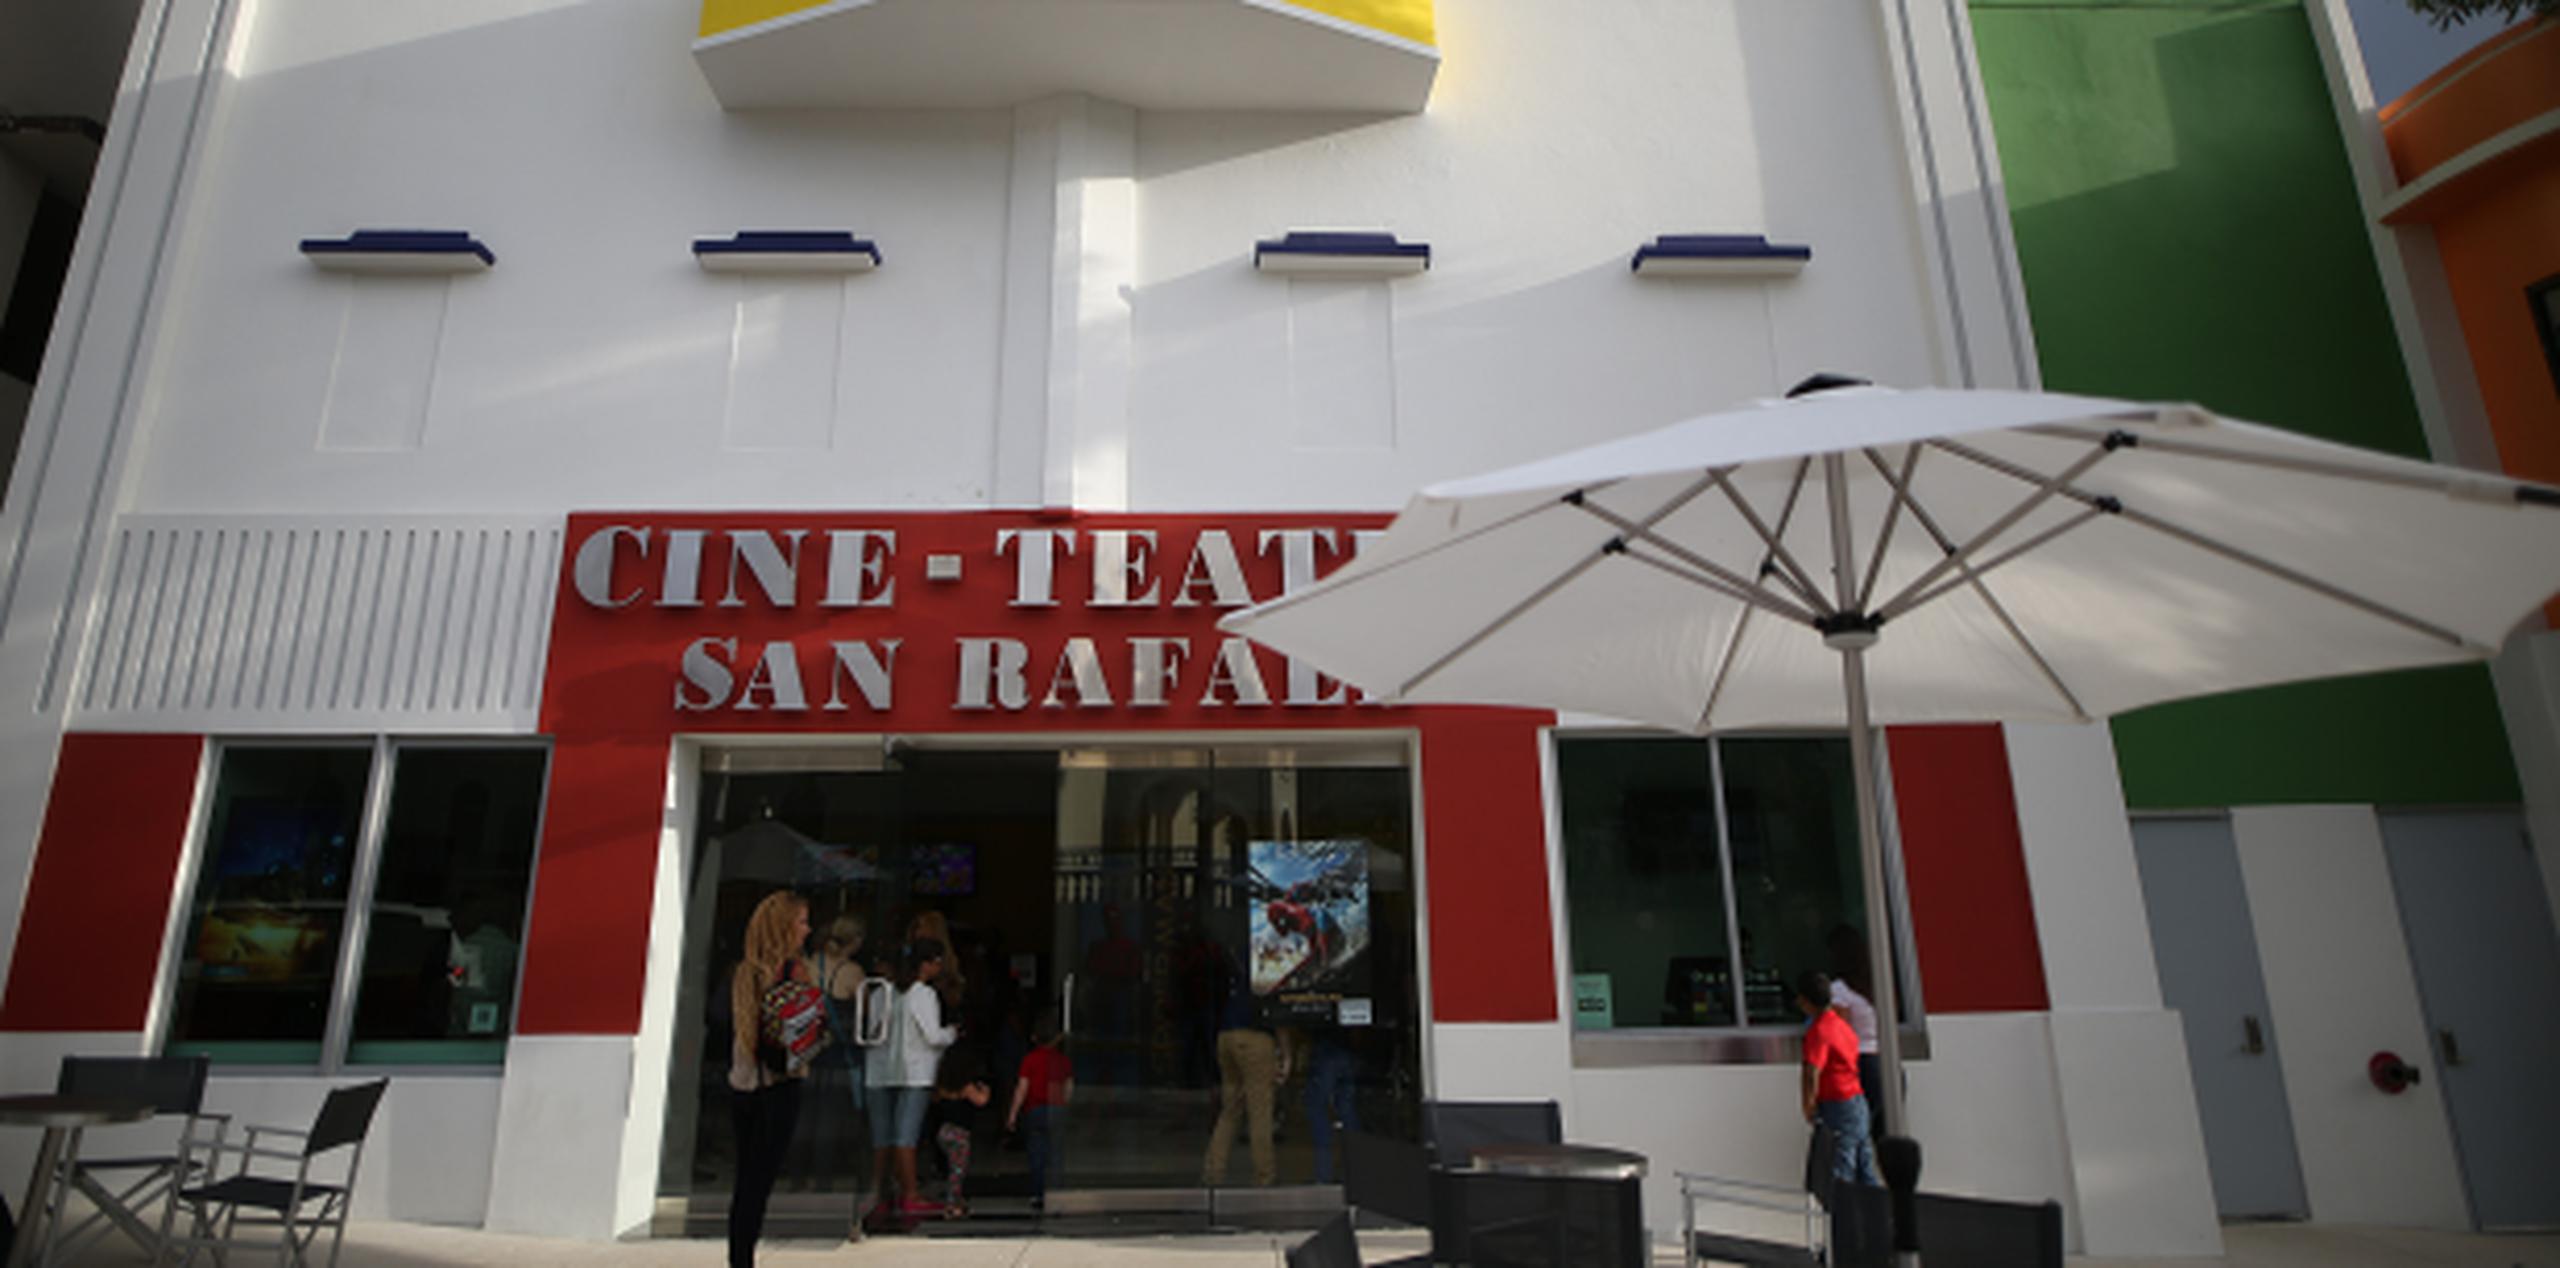 El Cine-Teatro San Rafael abrió sus puertas el pasado 1 de junio luego de permanecer cerrado durante 28 años. (jose.candelaria@gfrmedia.com)